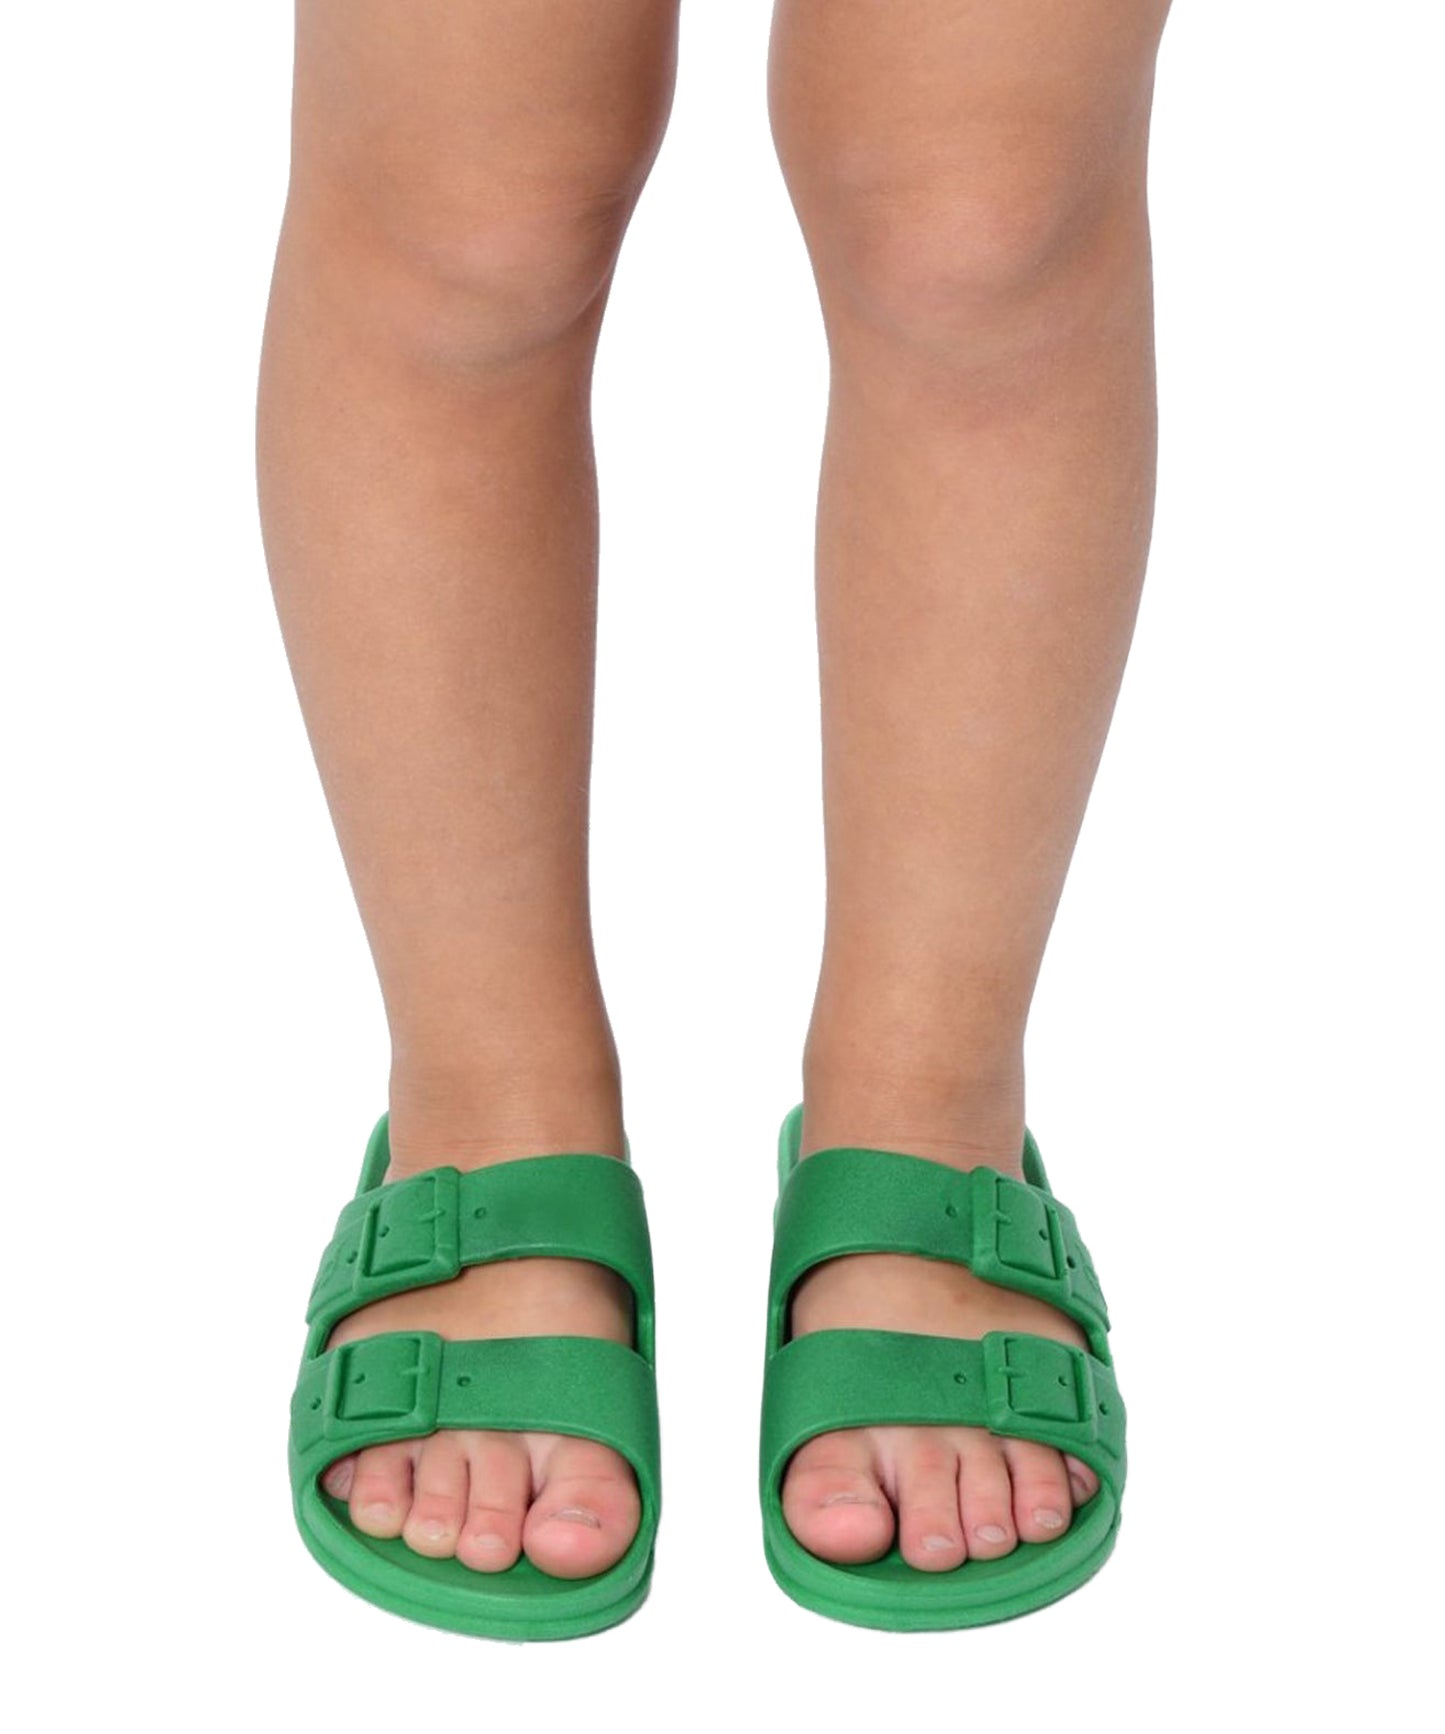 Zapatillas veraniegas Cacatoes-color verde-frescas,informales ,comodas ,varios modelos y varios colores.